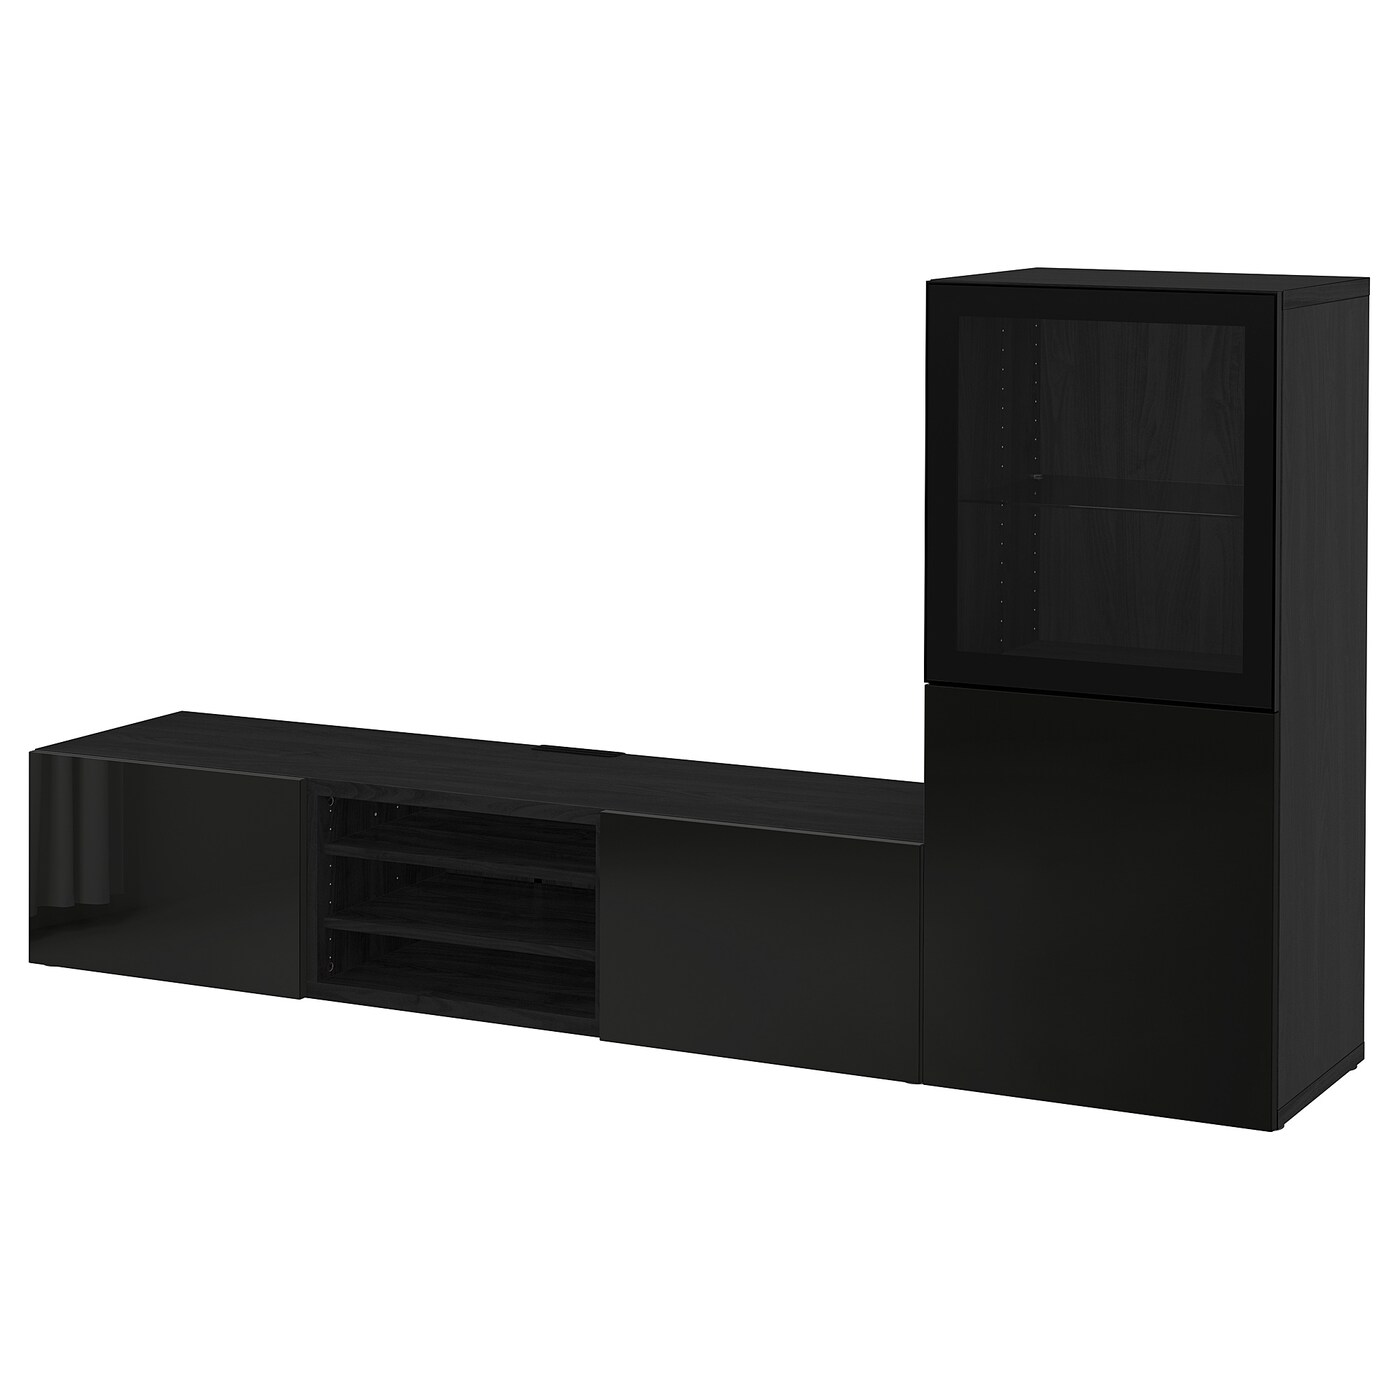 Комбинация для хранения ТВ - IKEA BESTÅ/BESTA, 129x42x240см, черный, БЕСТО ИКЕА